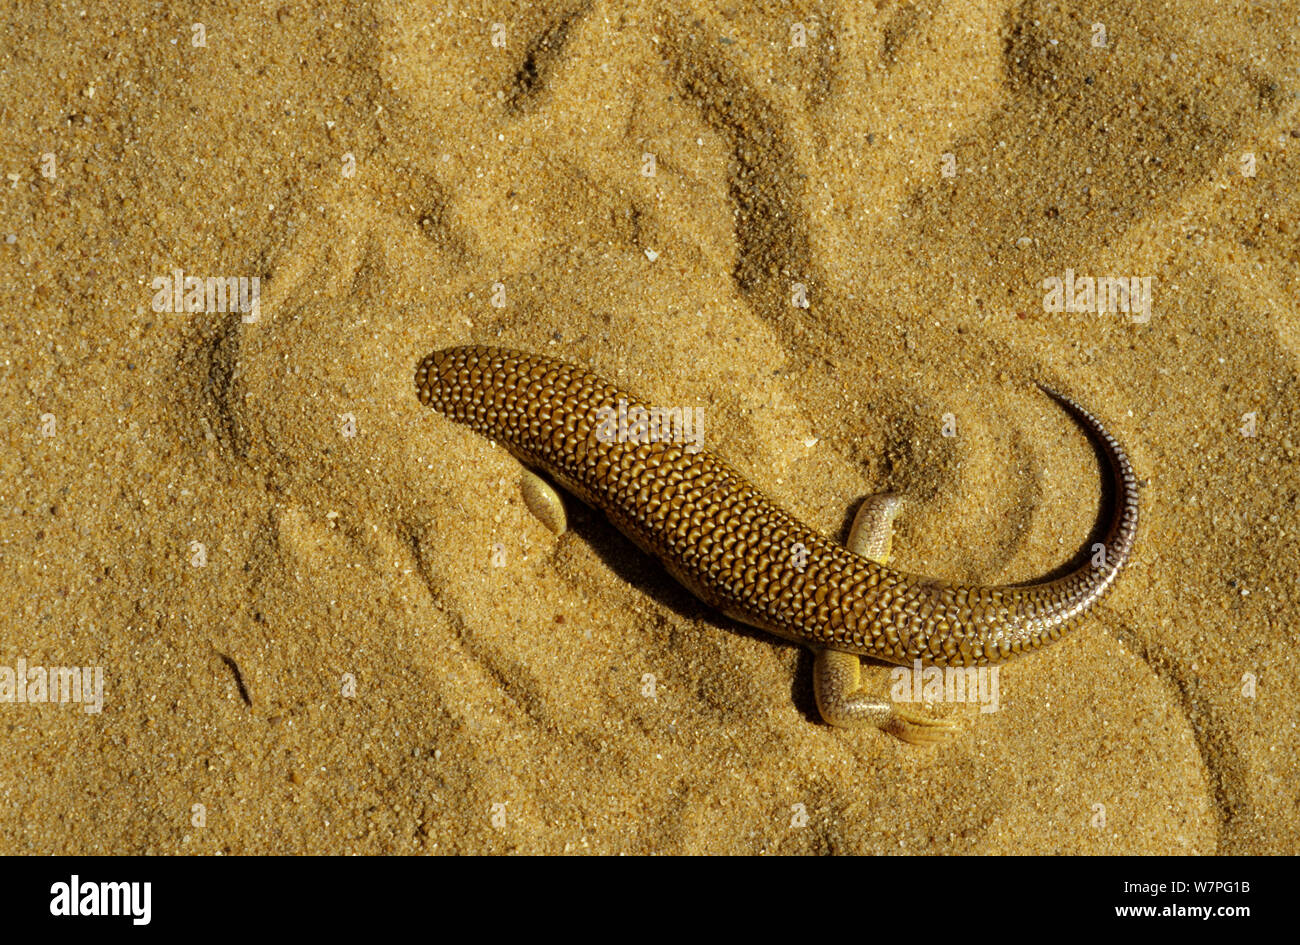 Sandfish (Scincus albifasciatus) burrowing under sand, Erg Chigaga, Morocco Stock Photo